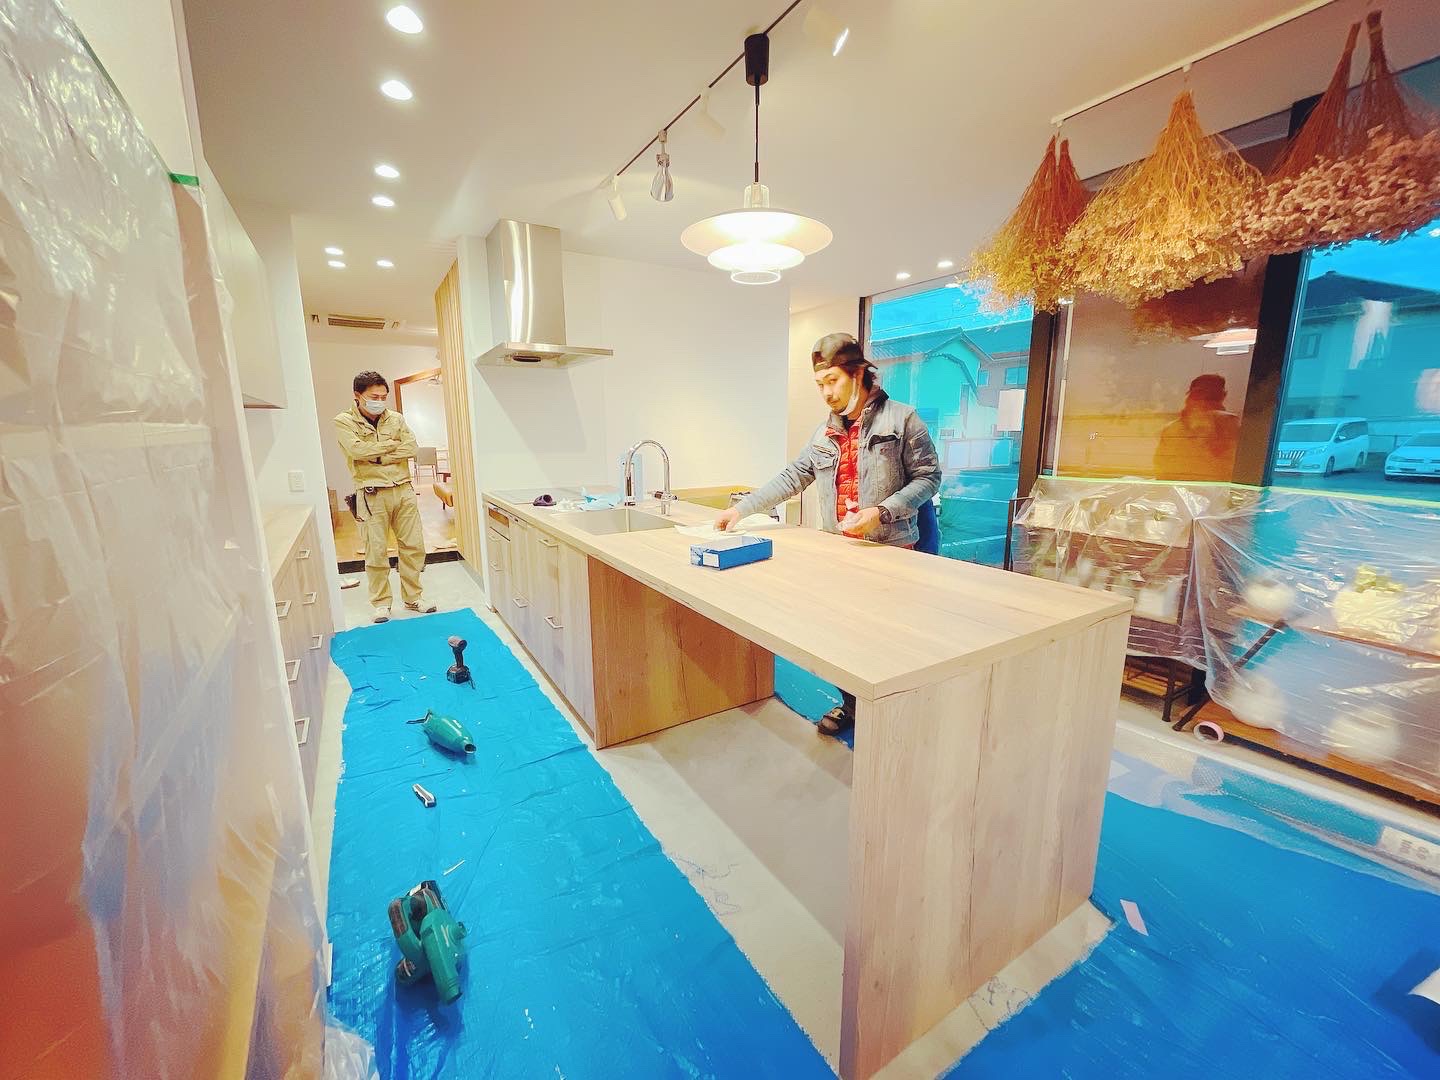 ハウスクラフト菰野スタジオにグラフテクト新キッチンを設置 三重県の注文住宅工務店ハウスクラフト